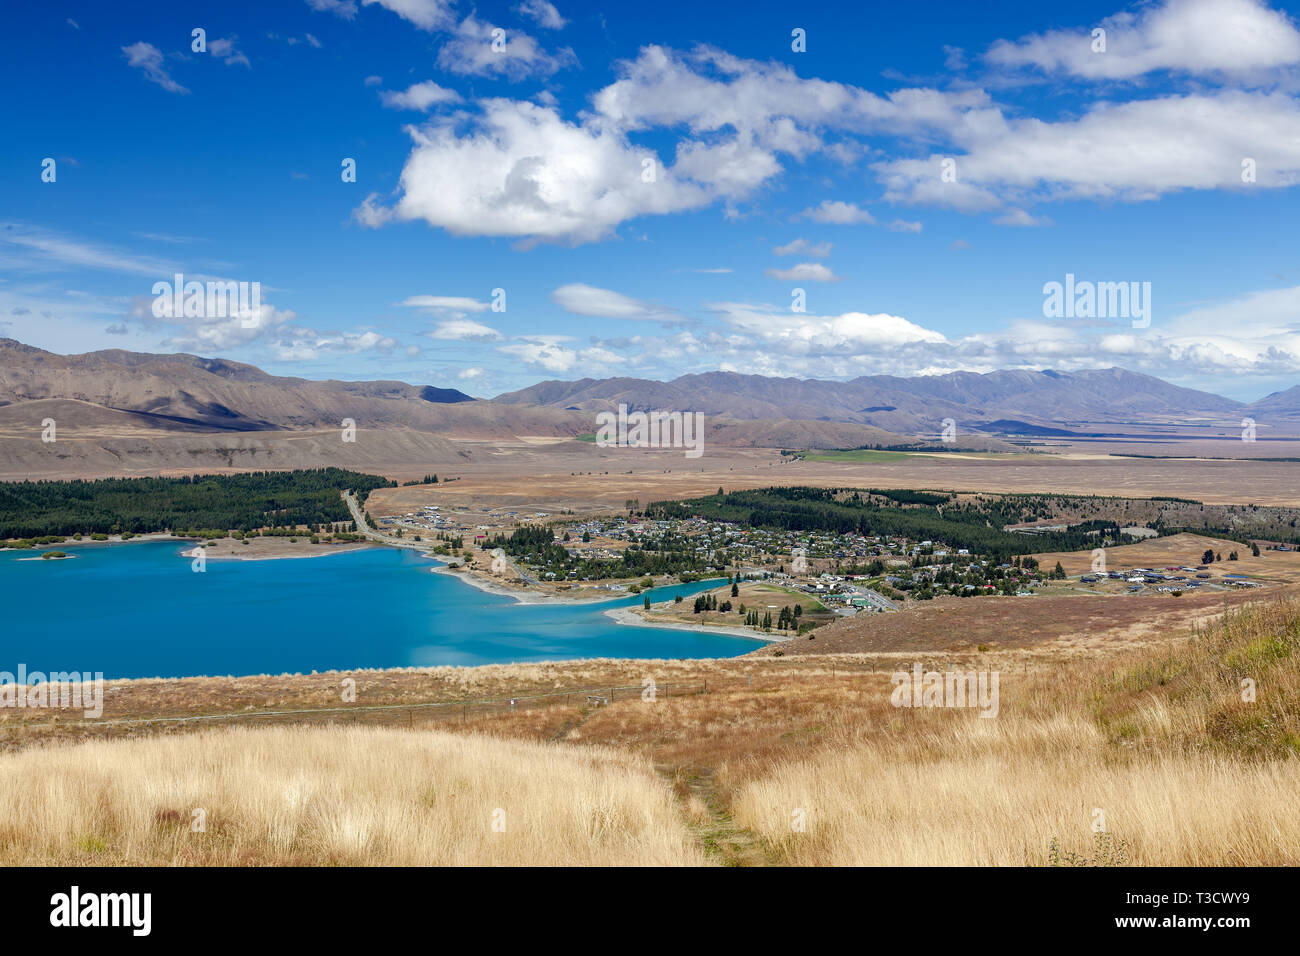 Distant view of the town of Tekapo on the shore of Lake Tekapo Stock Photo